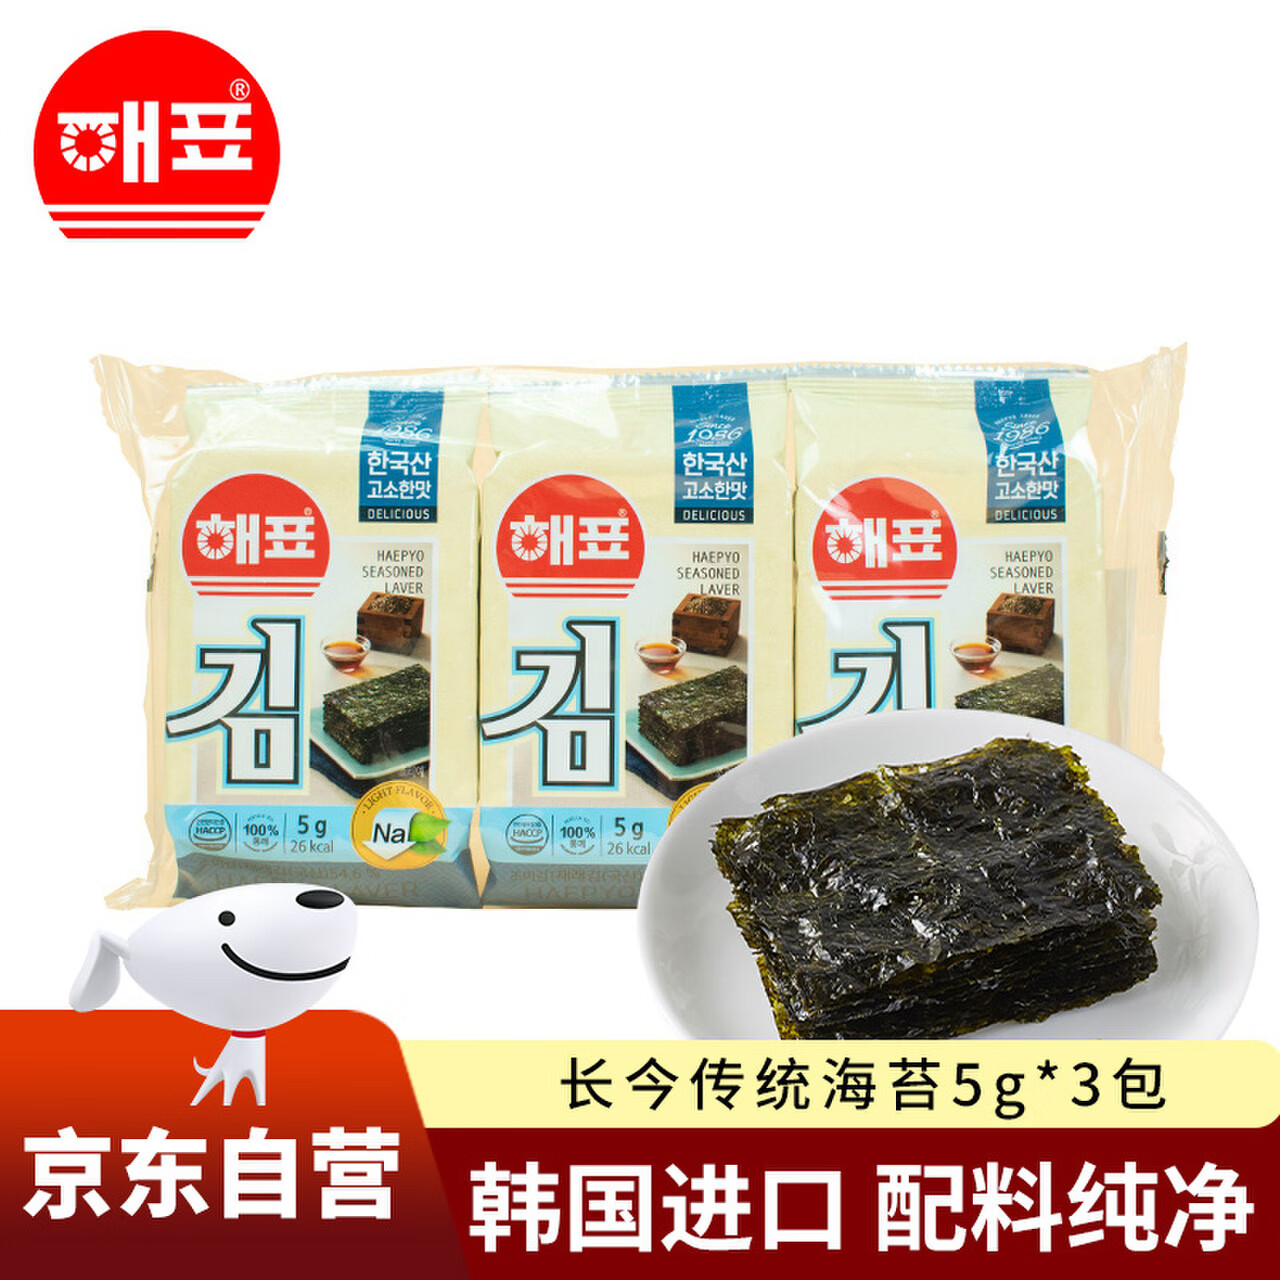 海牌菁品韩国进口长今传统海苔15g原味下午茶儿童即食零食5g*3包非油炸 6.9